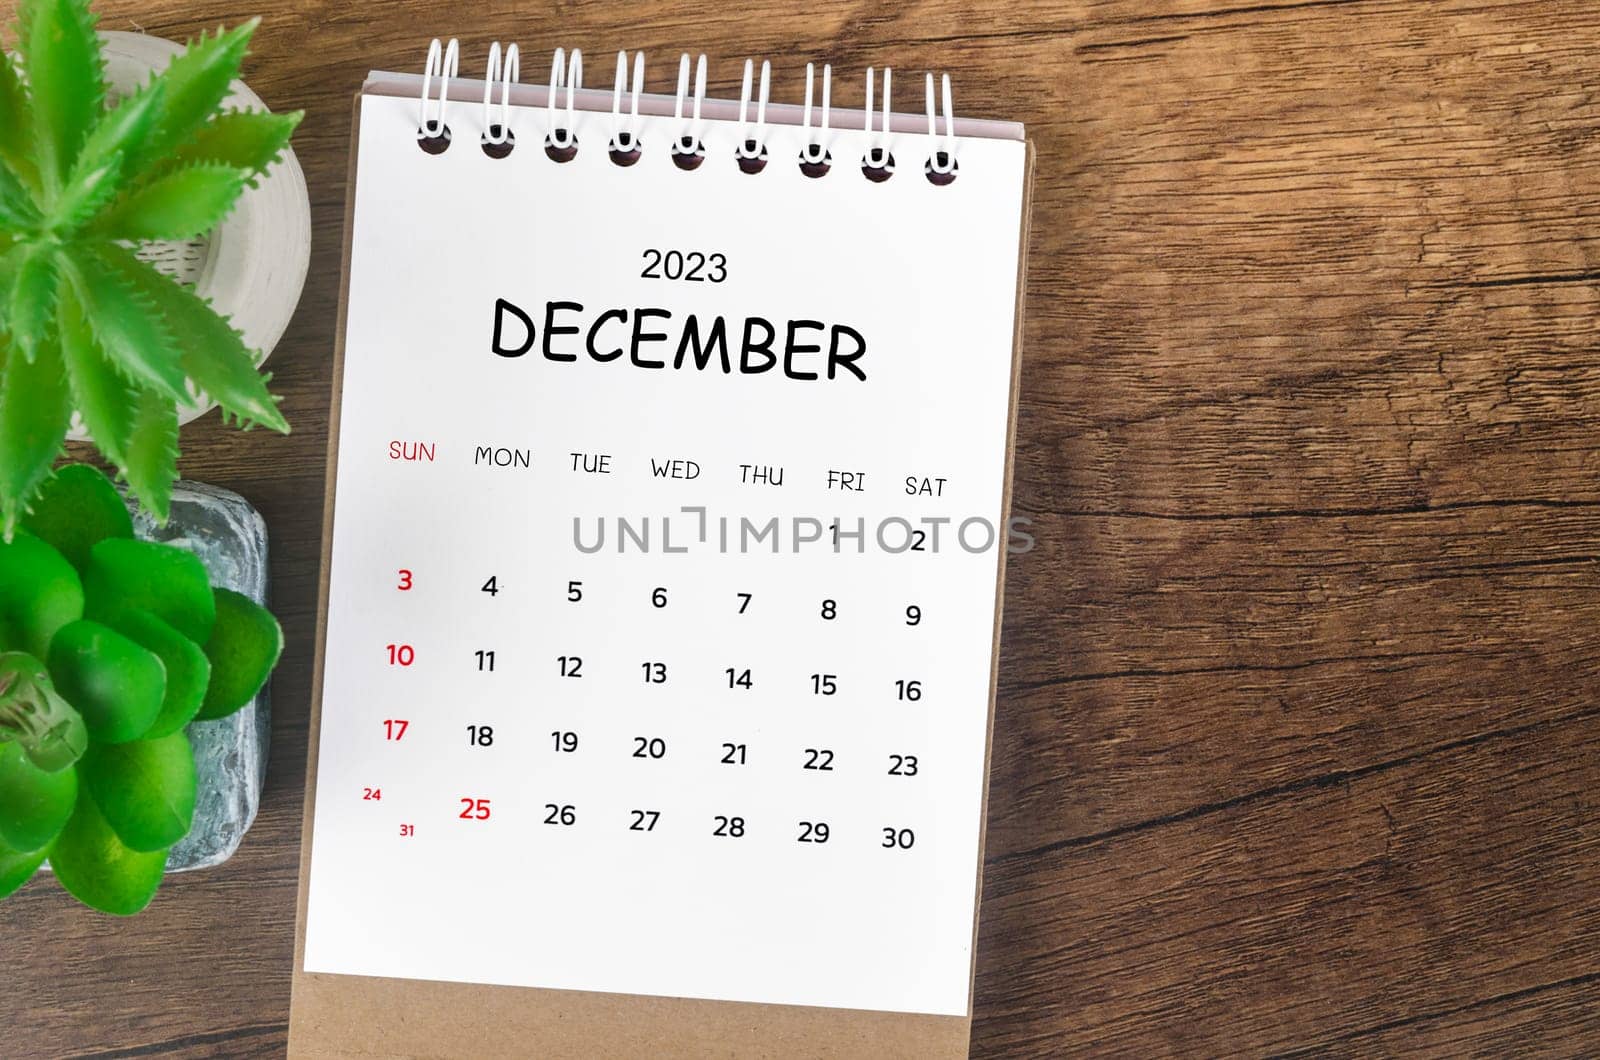 December 2023 desk calendar for 2023 on wooden background.